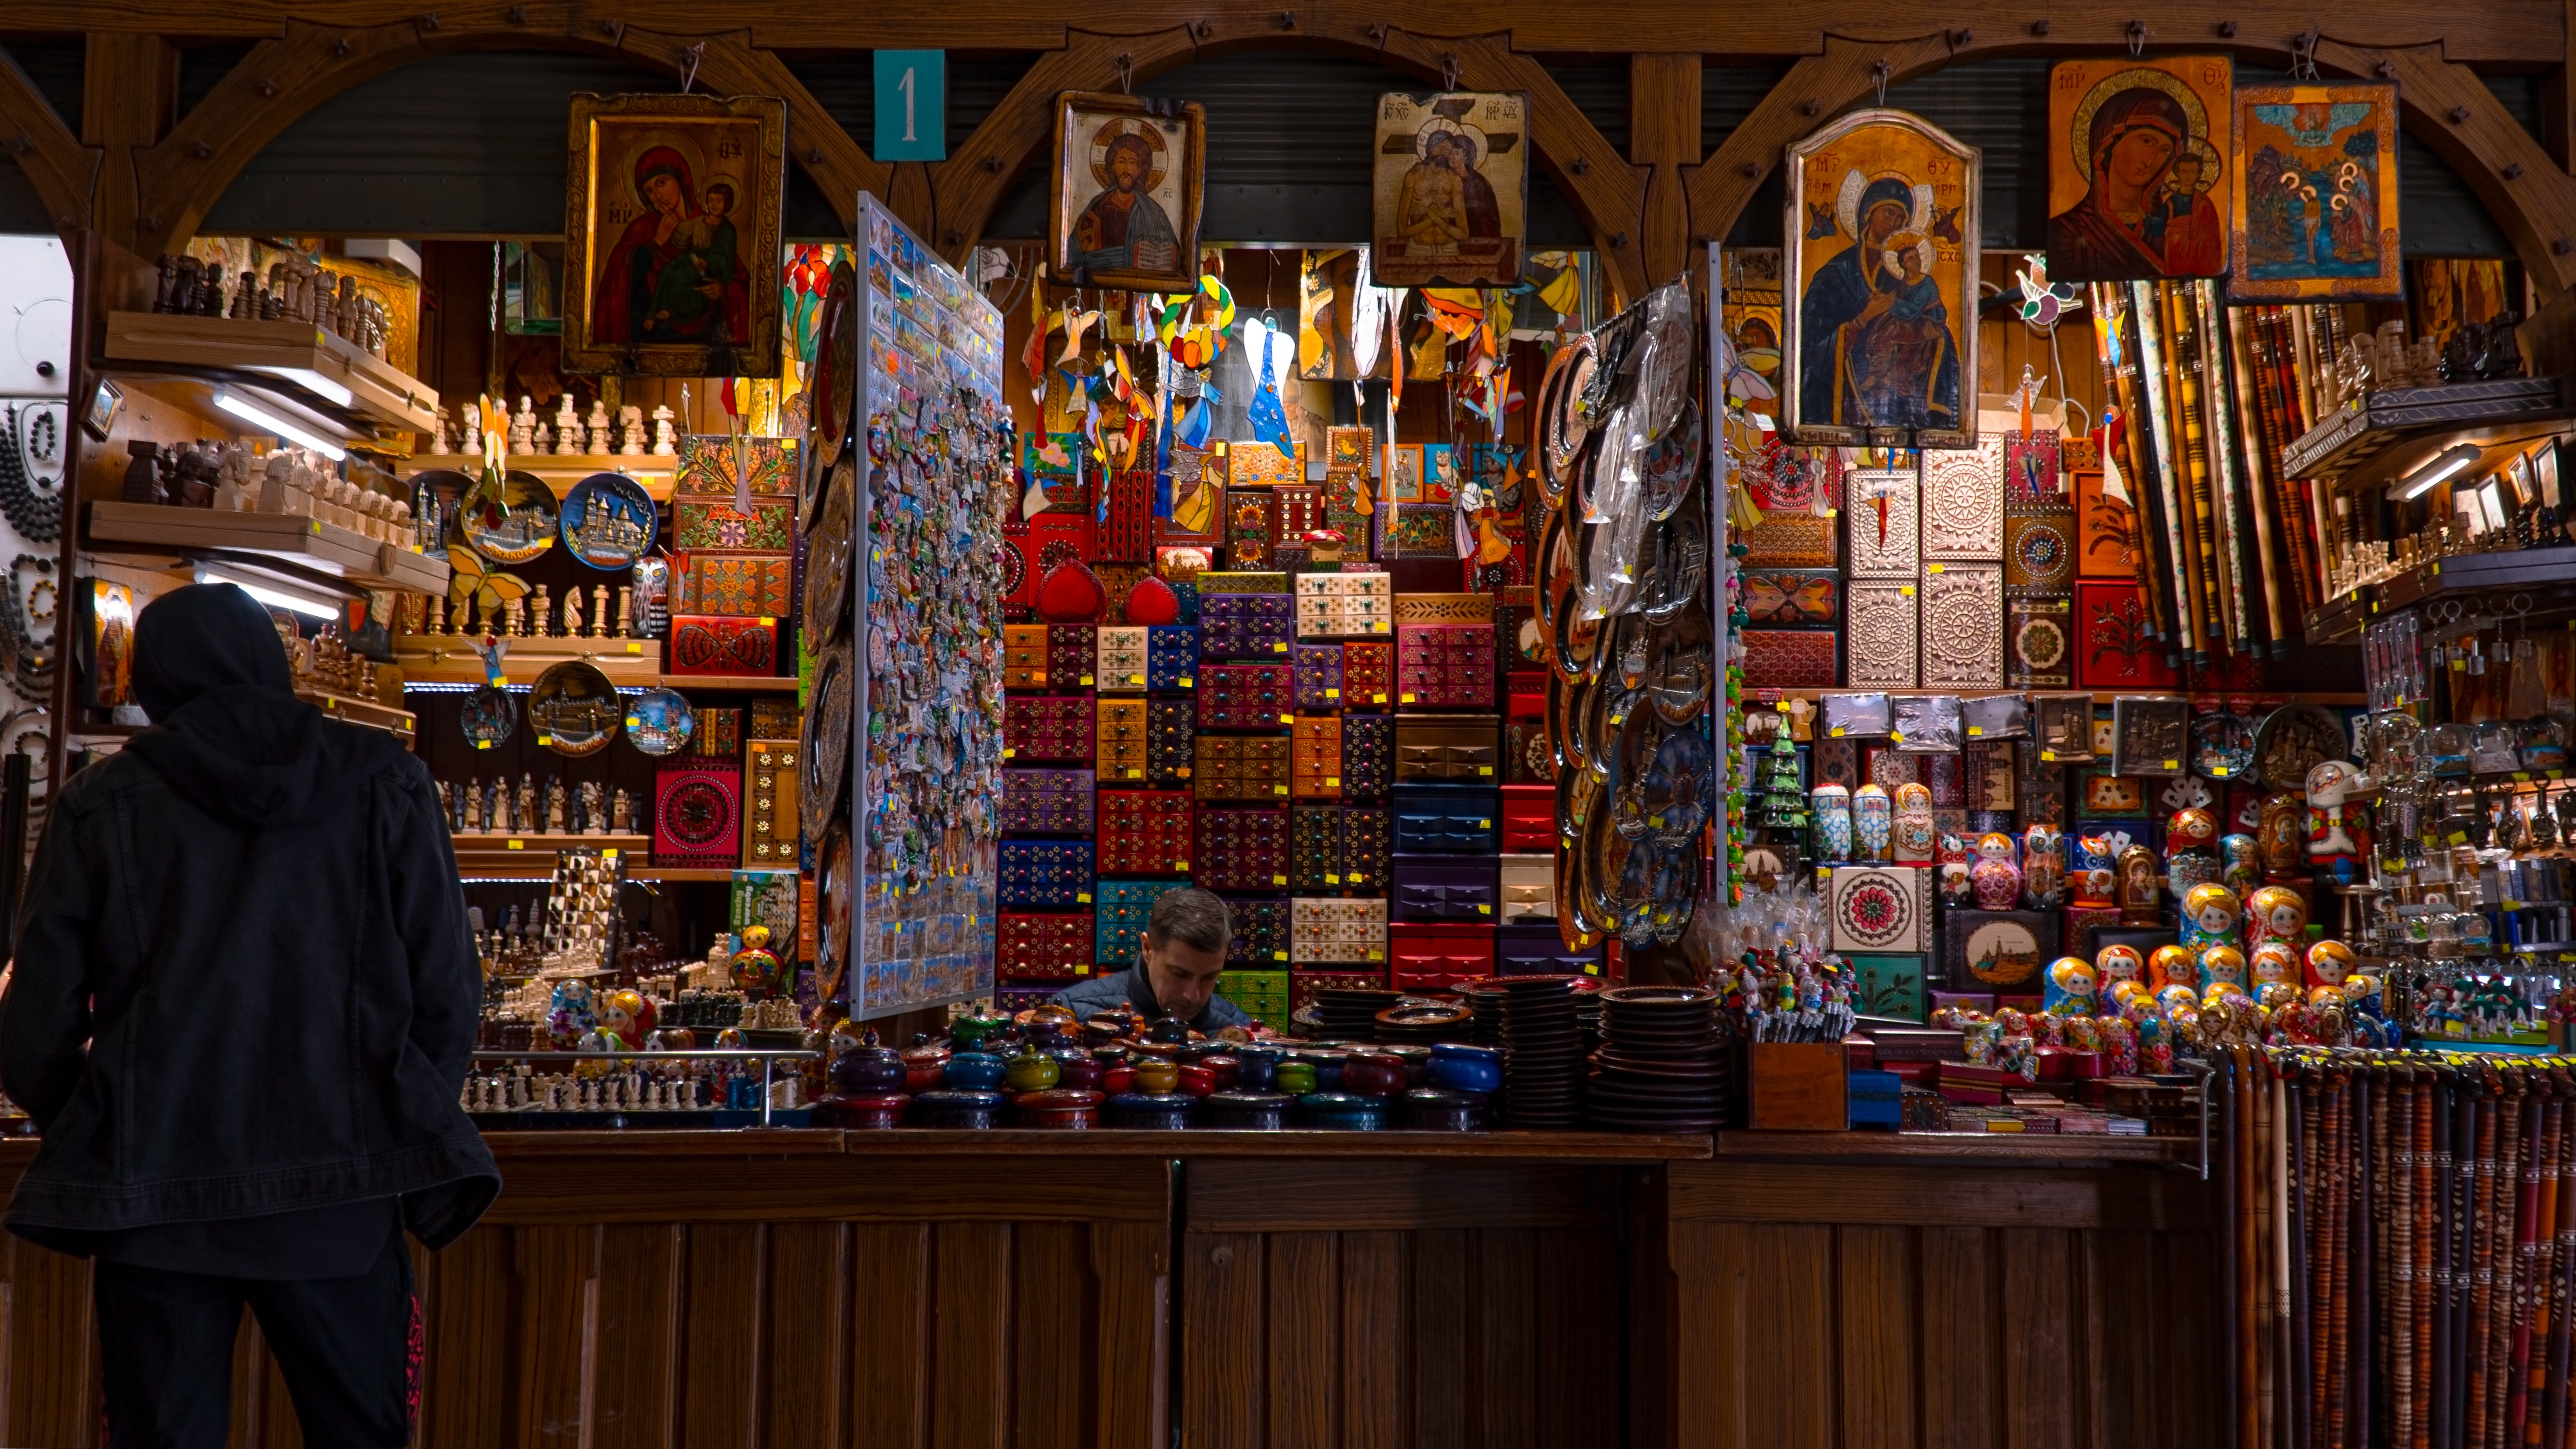 波蘭是天主教國家，街頭可見販售相關的宗教紀念品。（Photo by Hubert Buratynski on Unsplash）